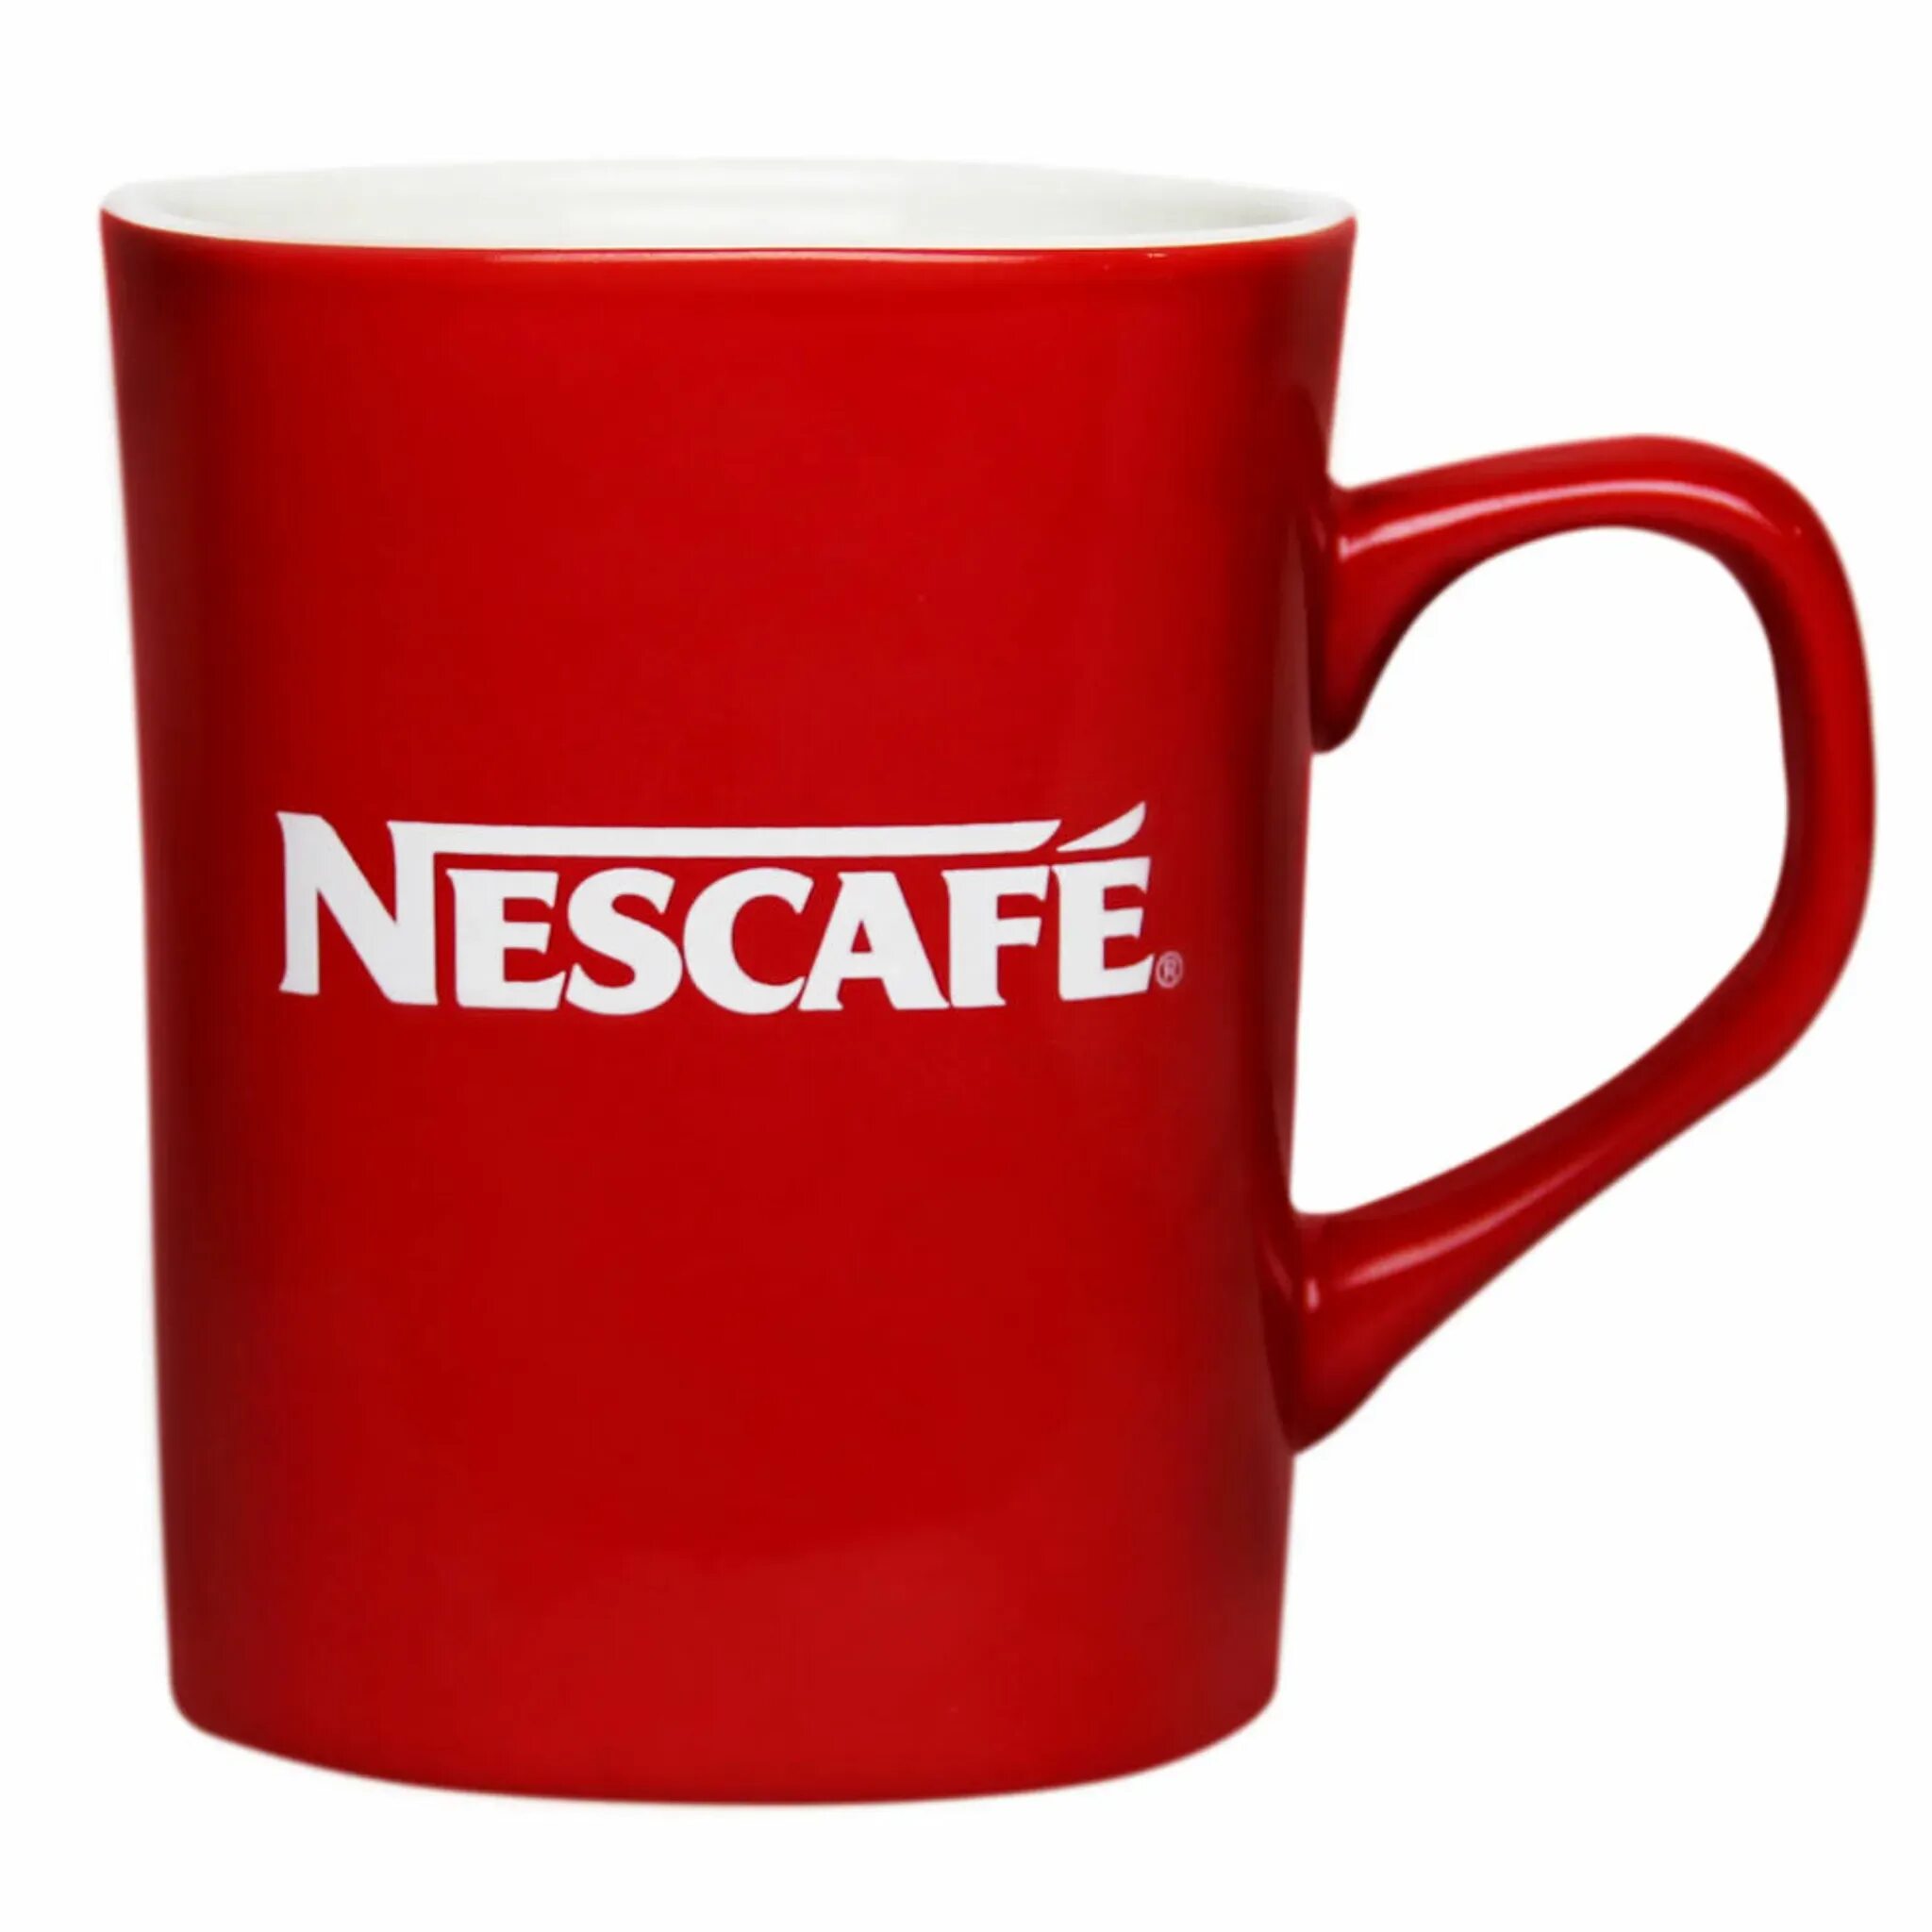 Кружки nescafe. Кружка Nescafe красная 500 мл. Кружка Nescafe 450 мл. Кружки Нескафе красная. Кофе Нескафе Кружка.